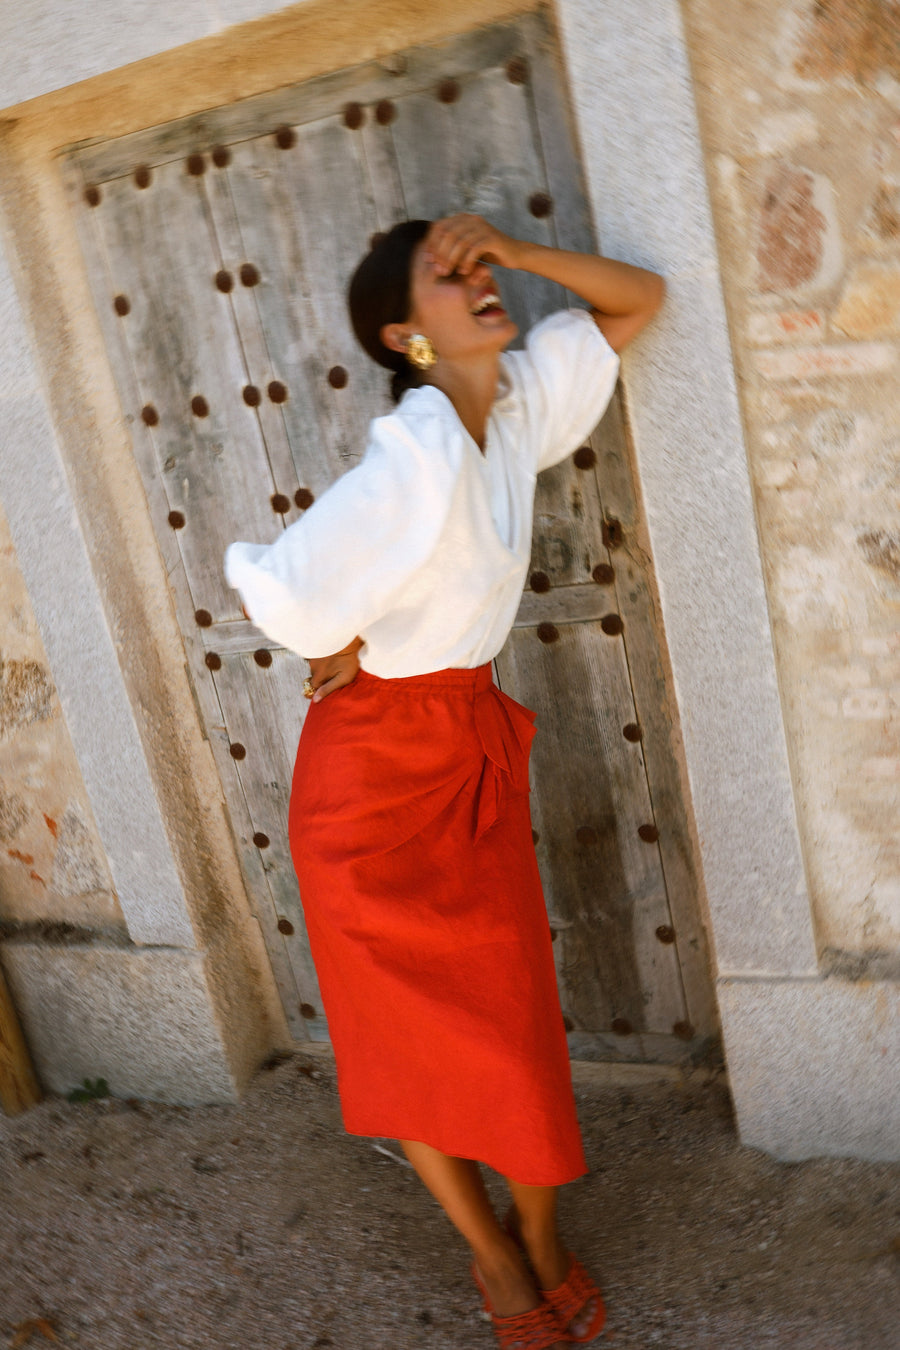 Falda pareo color rojo con frunce